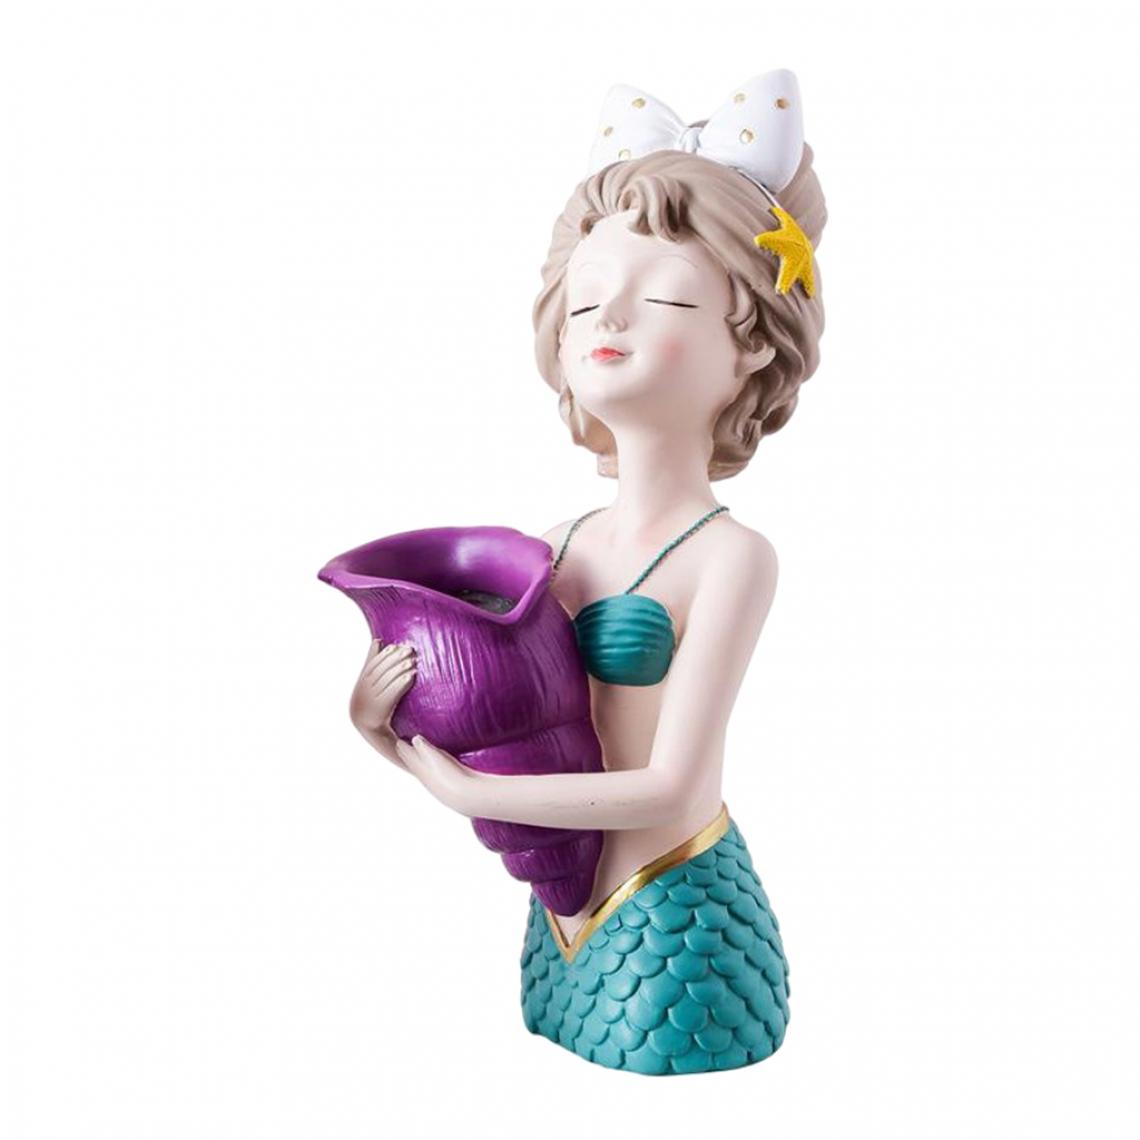 marque generique - Jolie Fille Sèche Fleur Vase Résine Bureau Bureau à Domicile Sculpture Sirène_purple - Vases